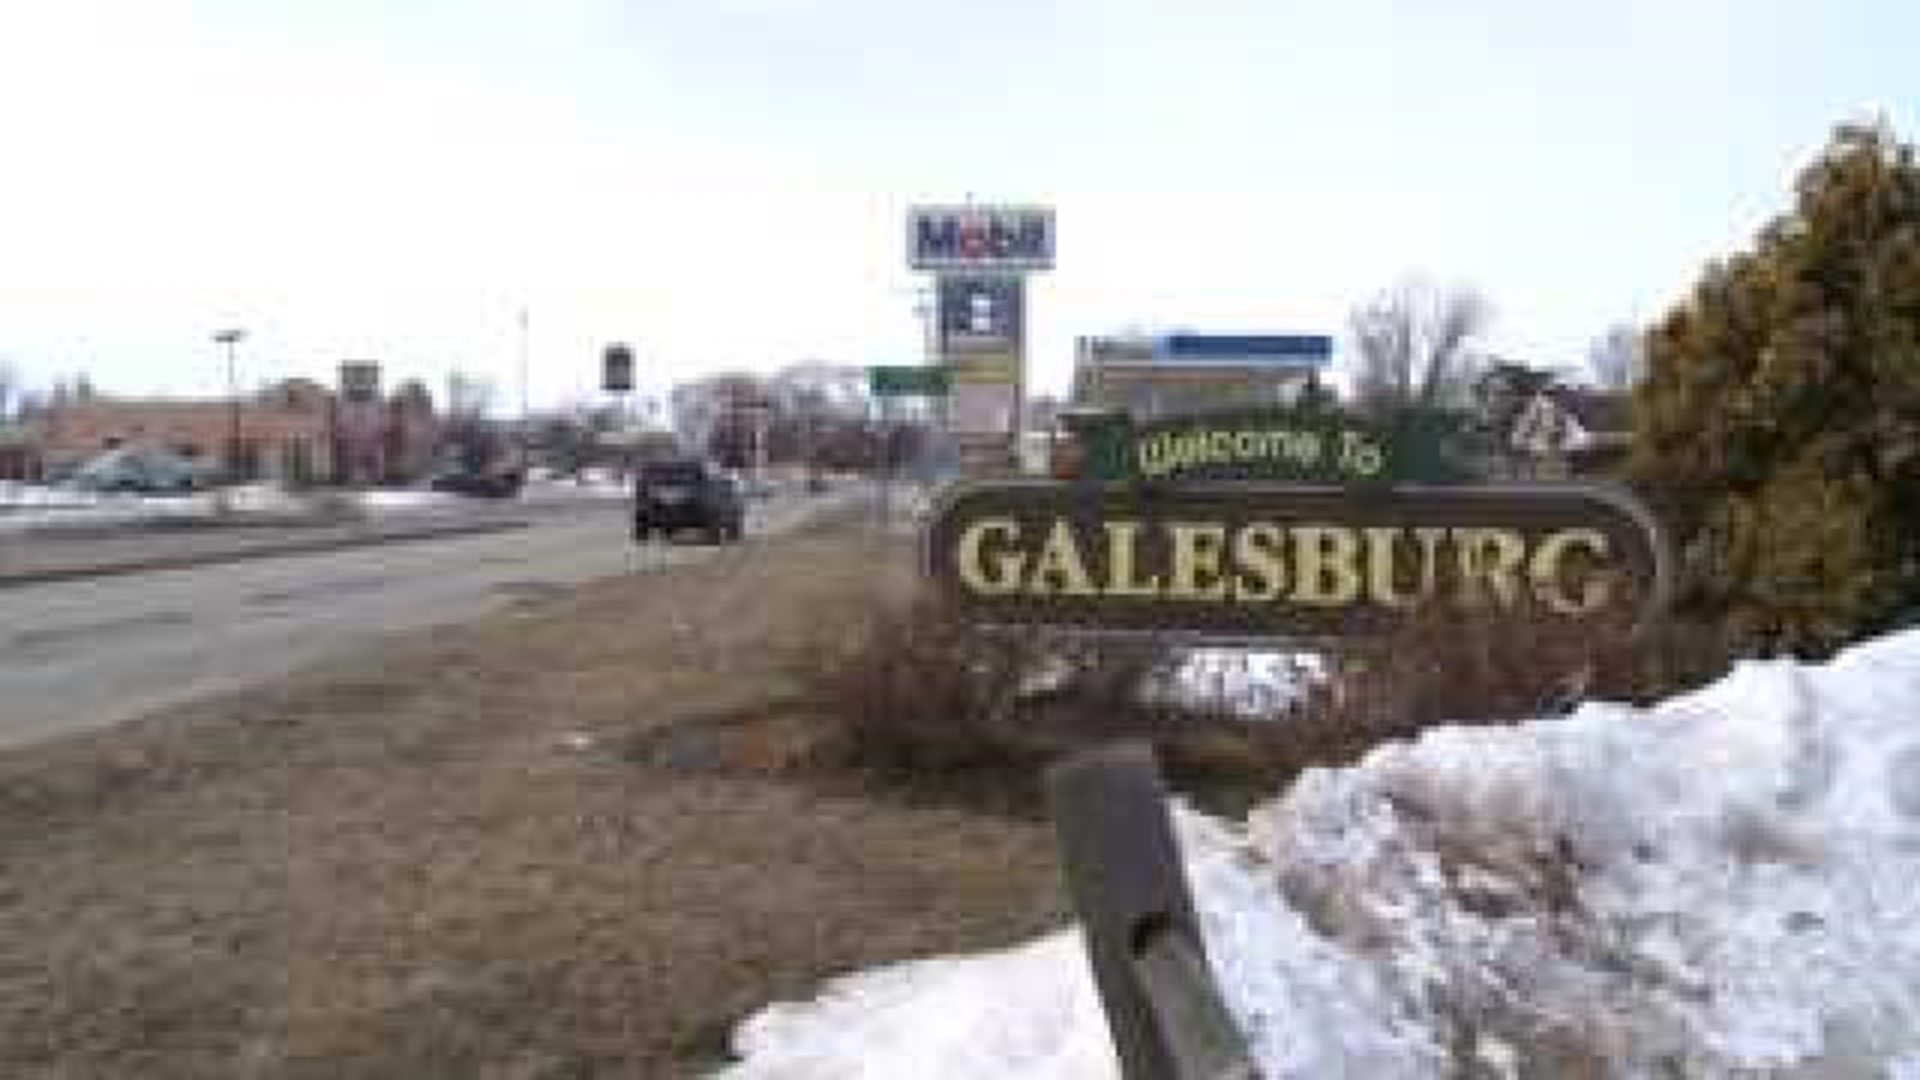 Galesburg seeing tourism increase